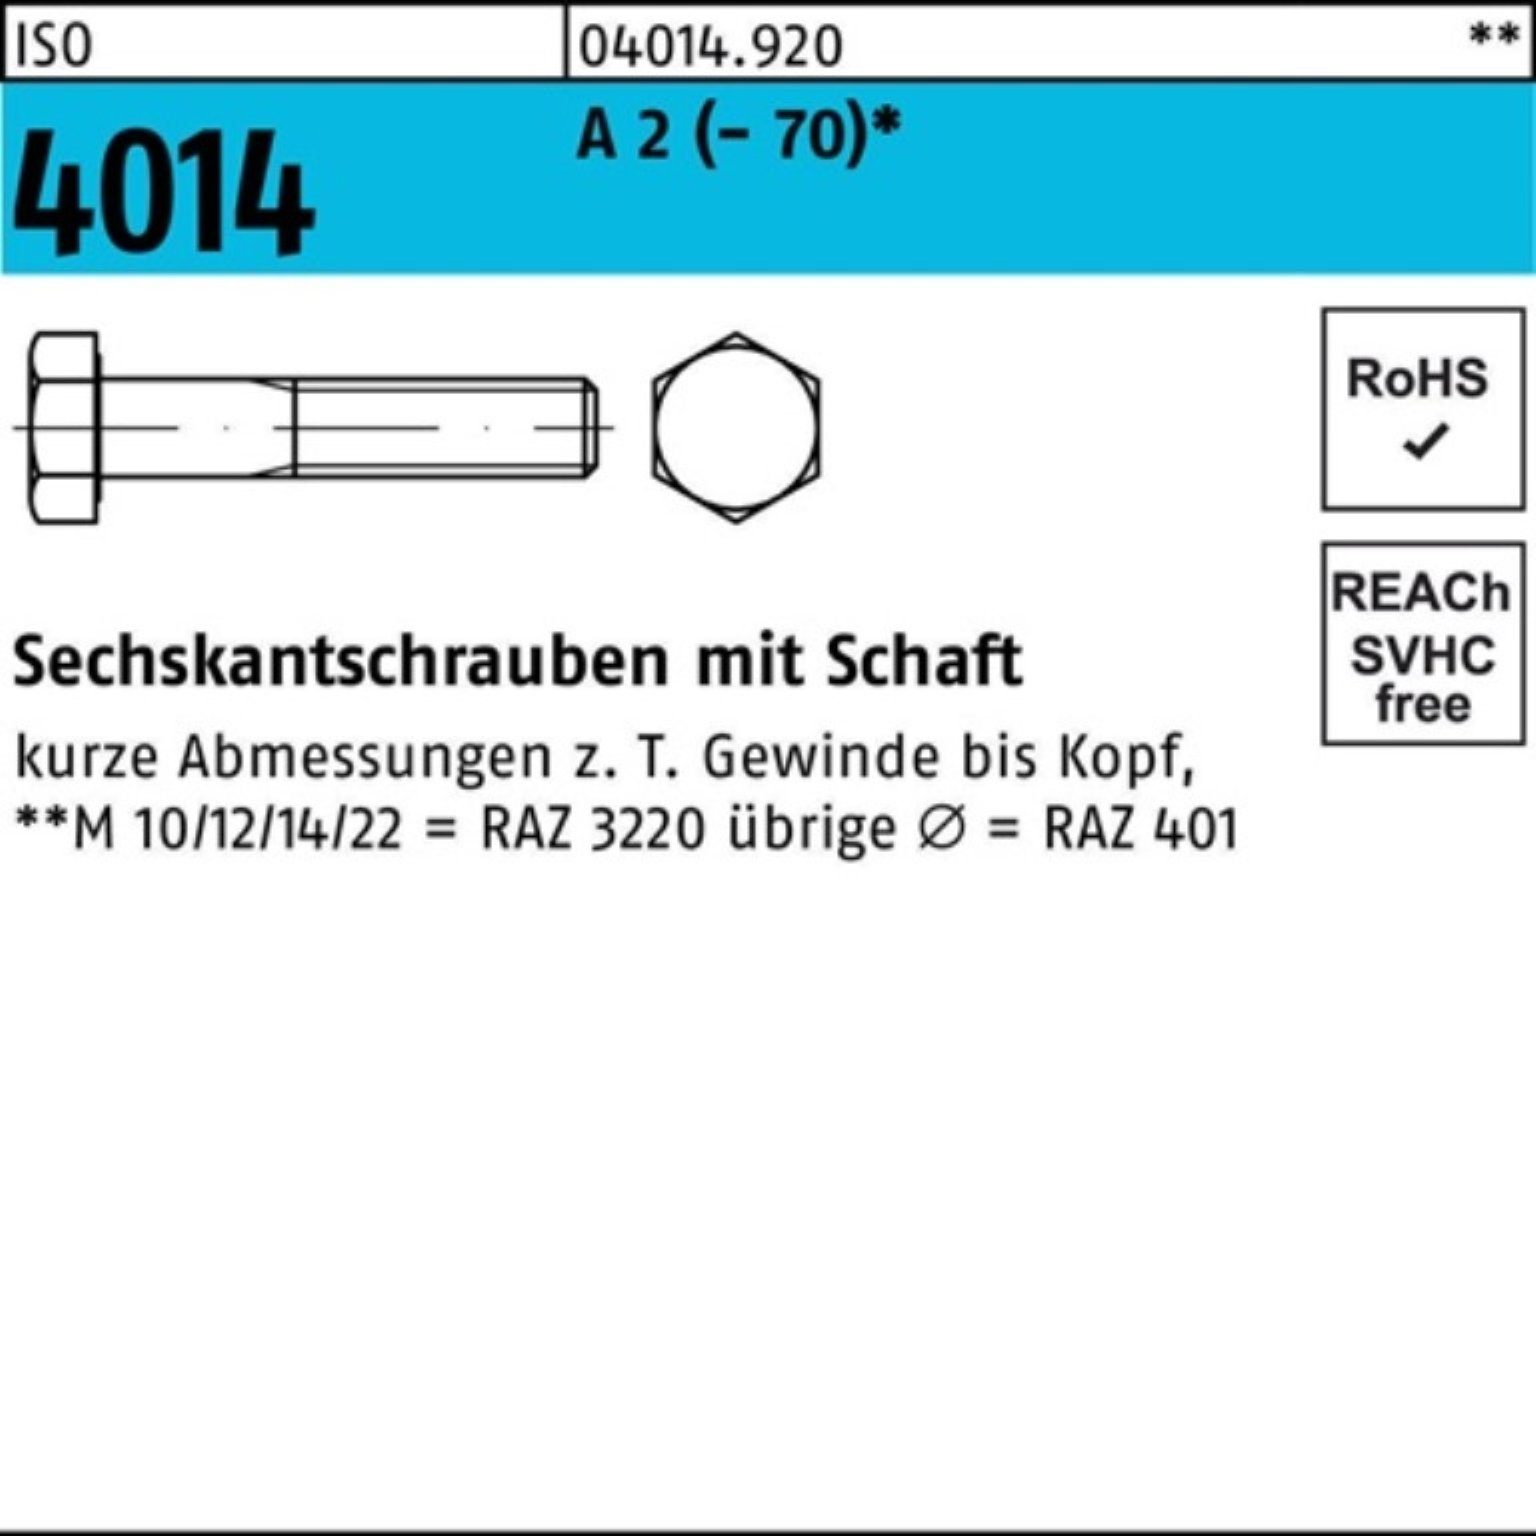 Bufab Sechskantschraube 100er Pack Sechskantschraube ISO 4014 Schaft M5x 90 A 2 (70) 100 St